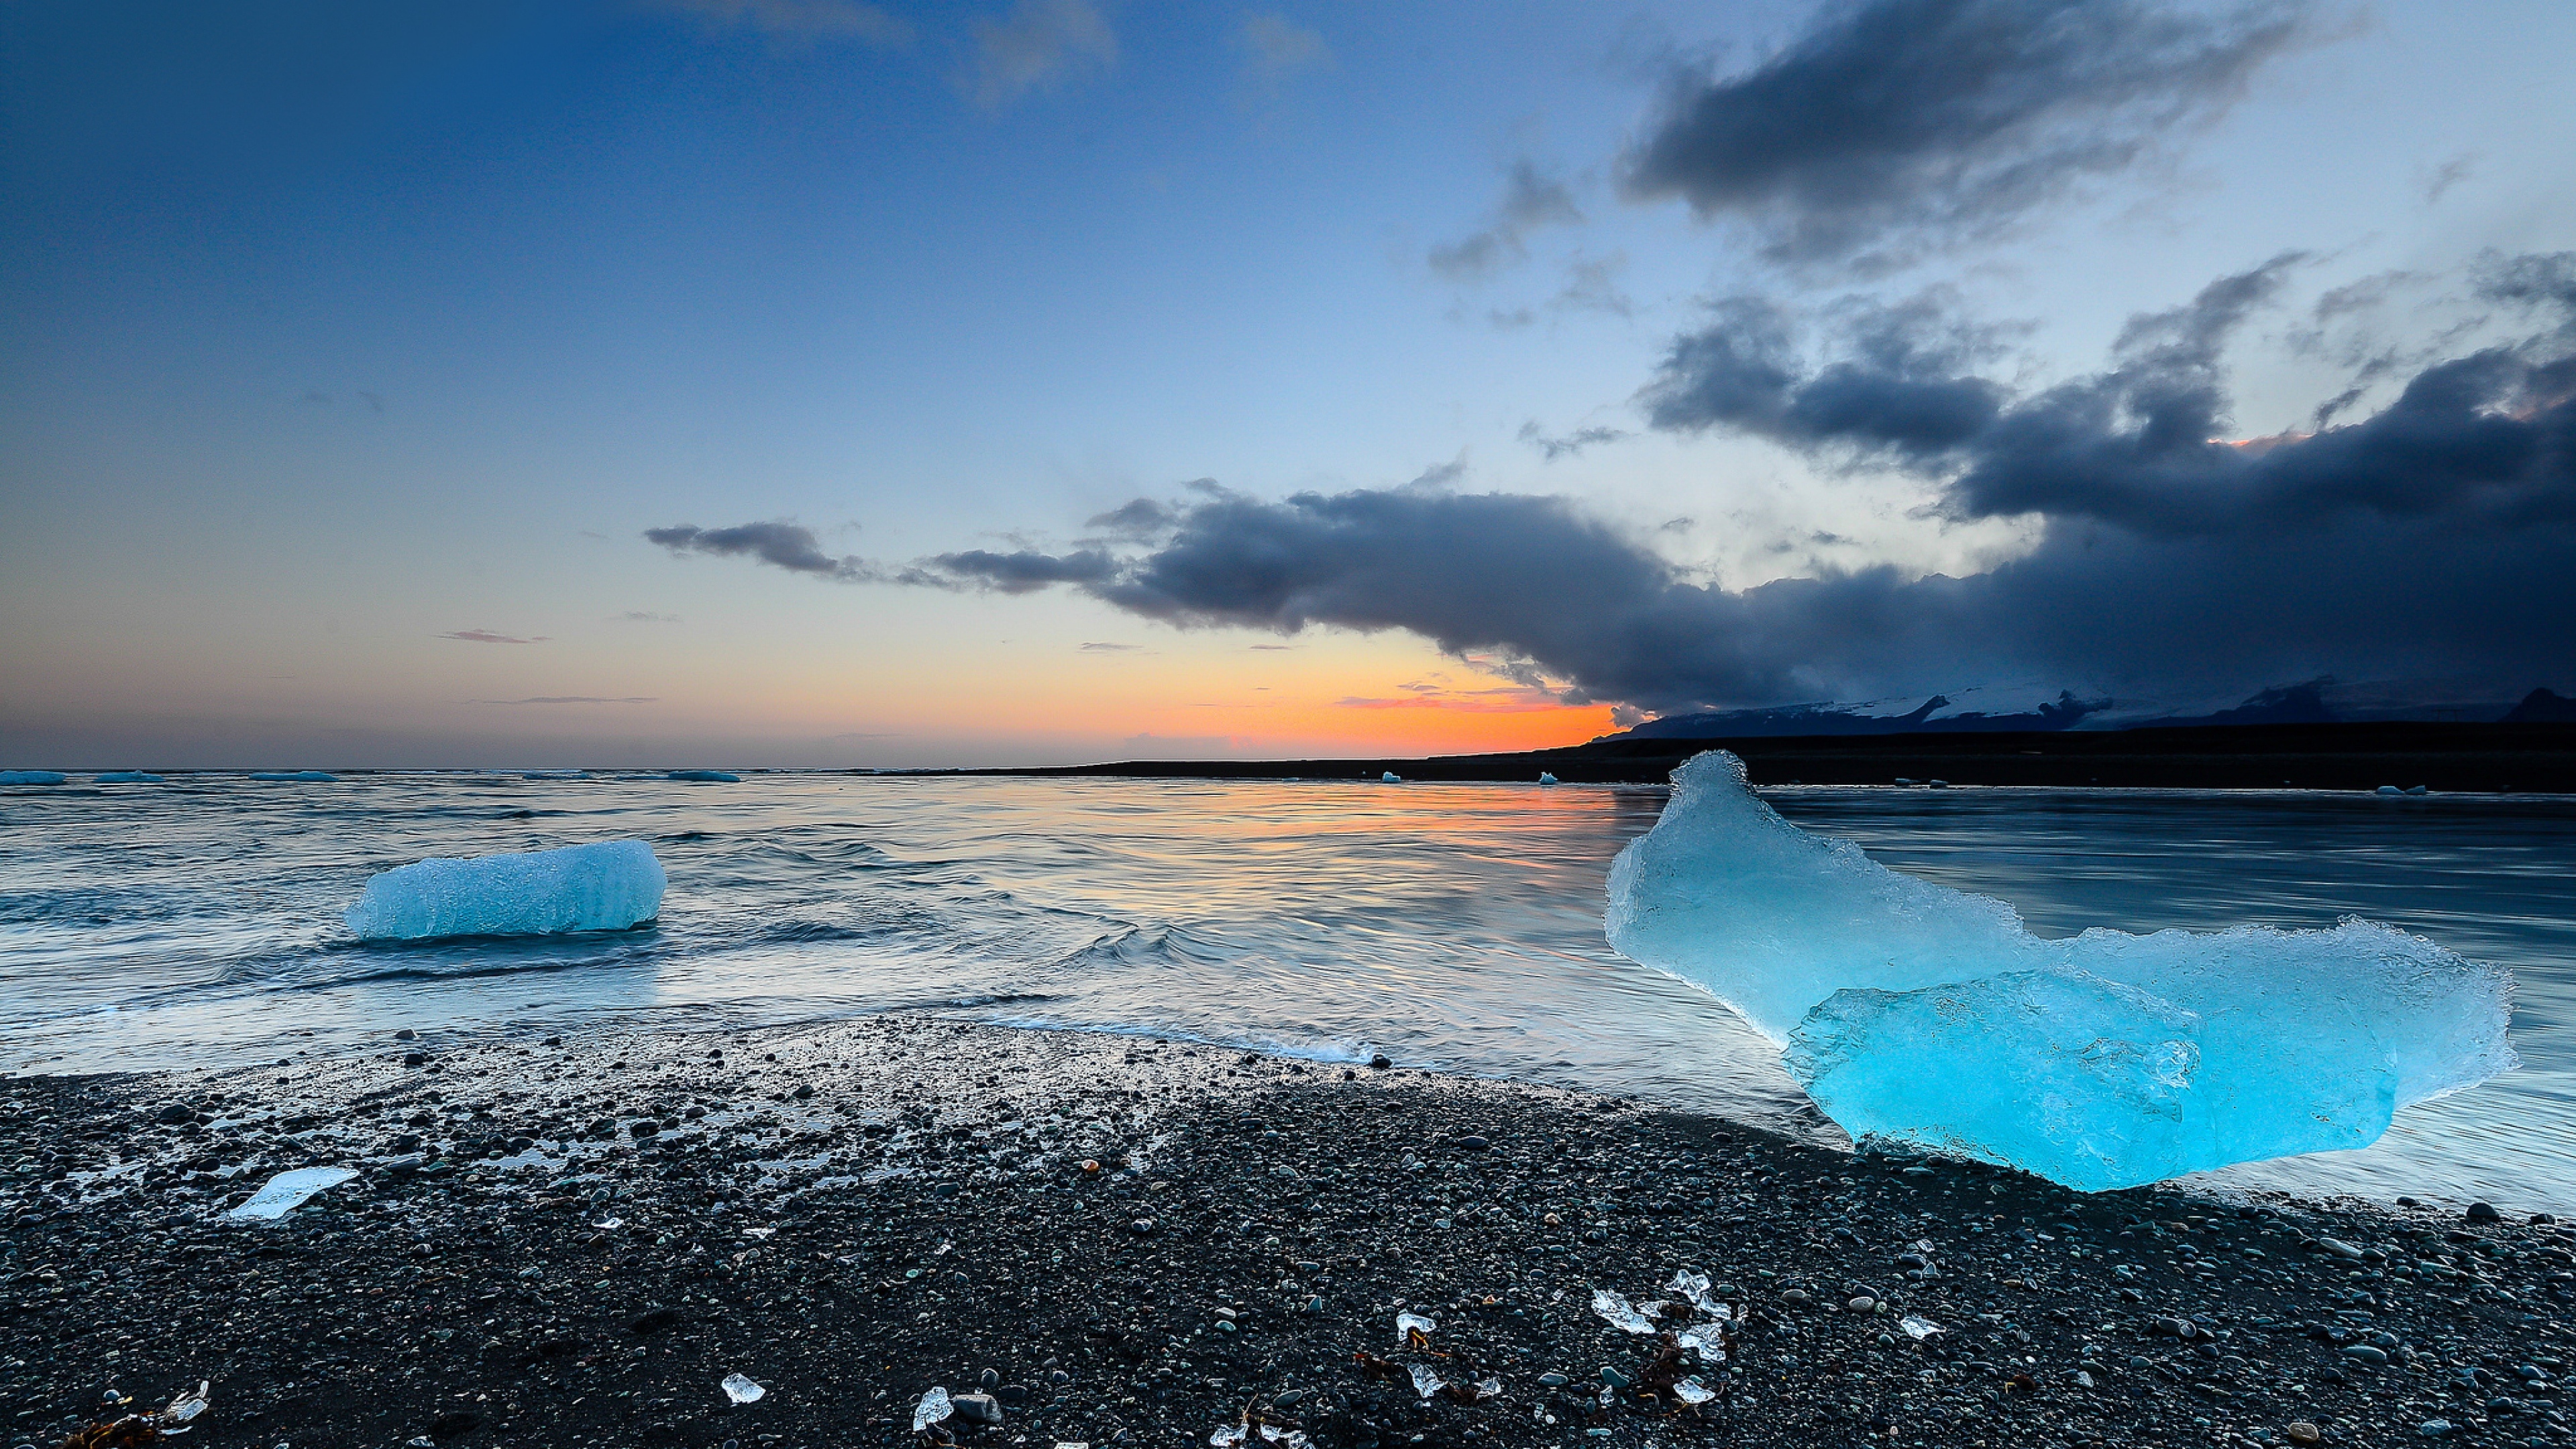 Hình nền Iceland – Một chuyến phiêu lưu qua những bức hình đẹp của Iceland. Bạn sẽ không muốn bỏ qua cơ hội để thư giãn với những bức tranh đẹp này, một món quà dành riêng cho tinh thần của bạn.